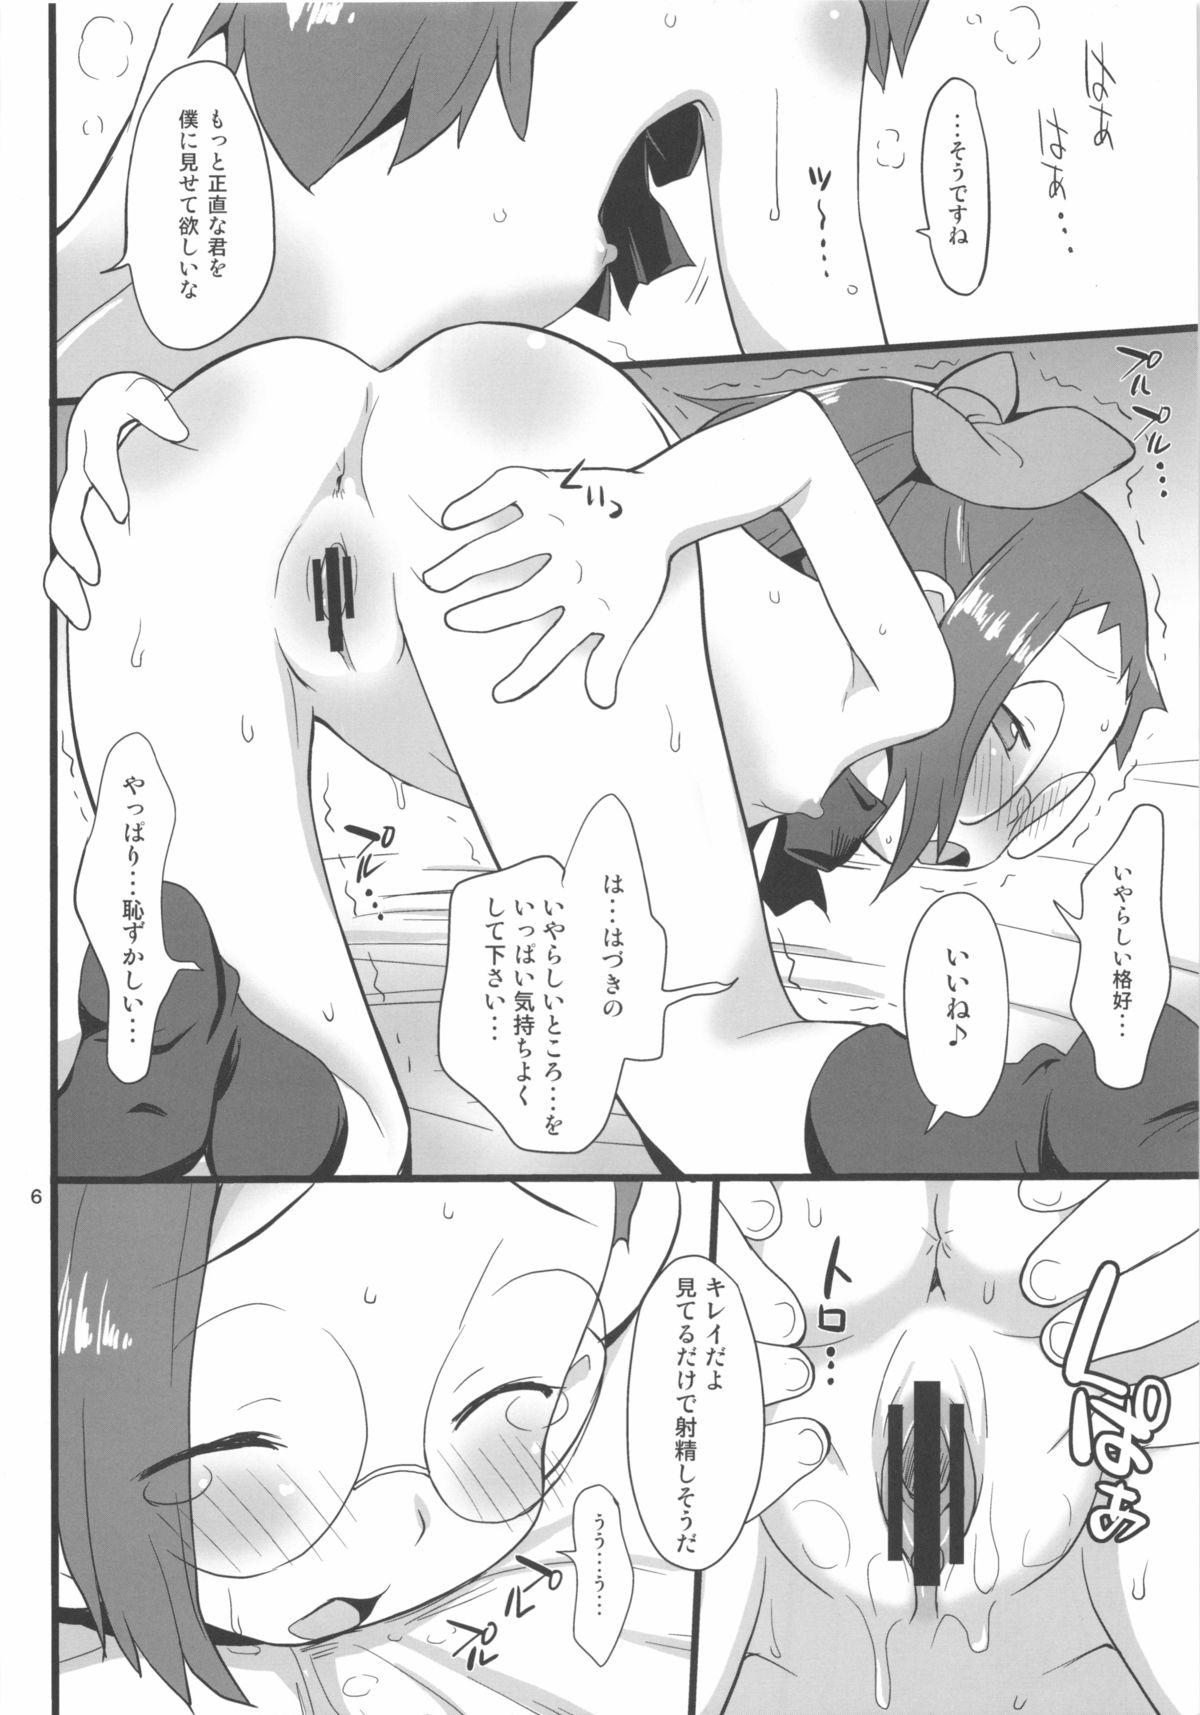 Teasing Watashi no Jikan Yuugure - Ojamajo doremi Girlnextdoor - Page 6